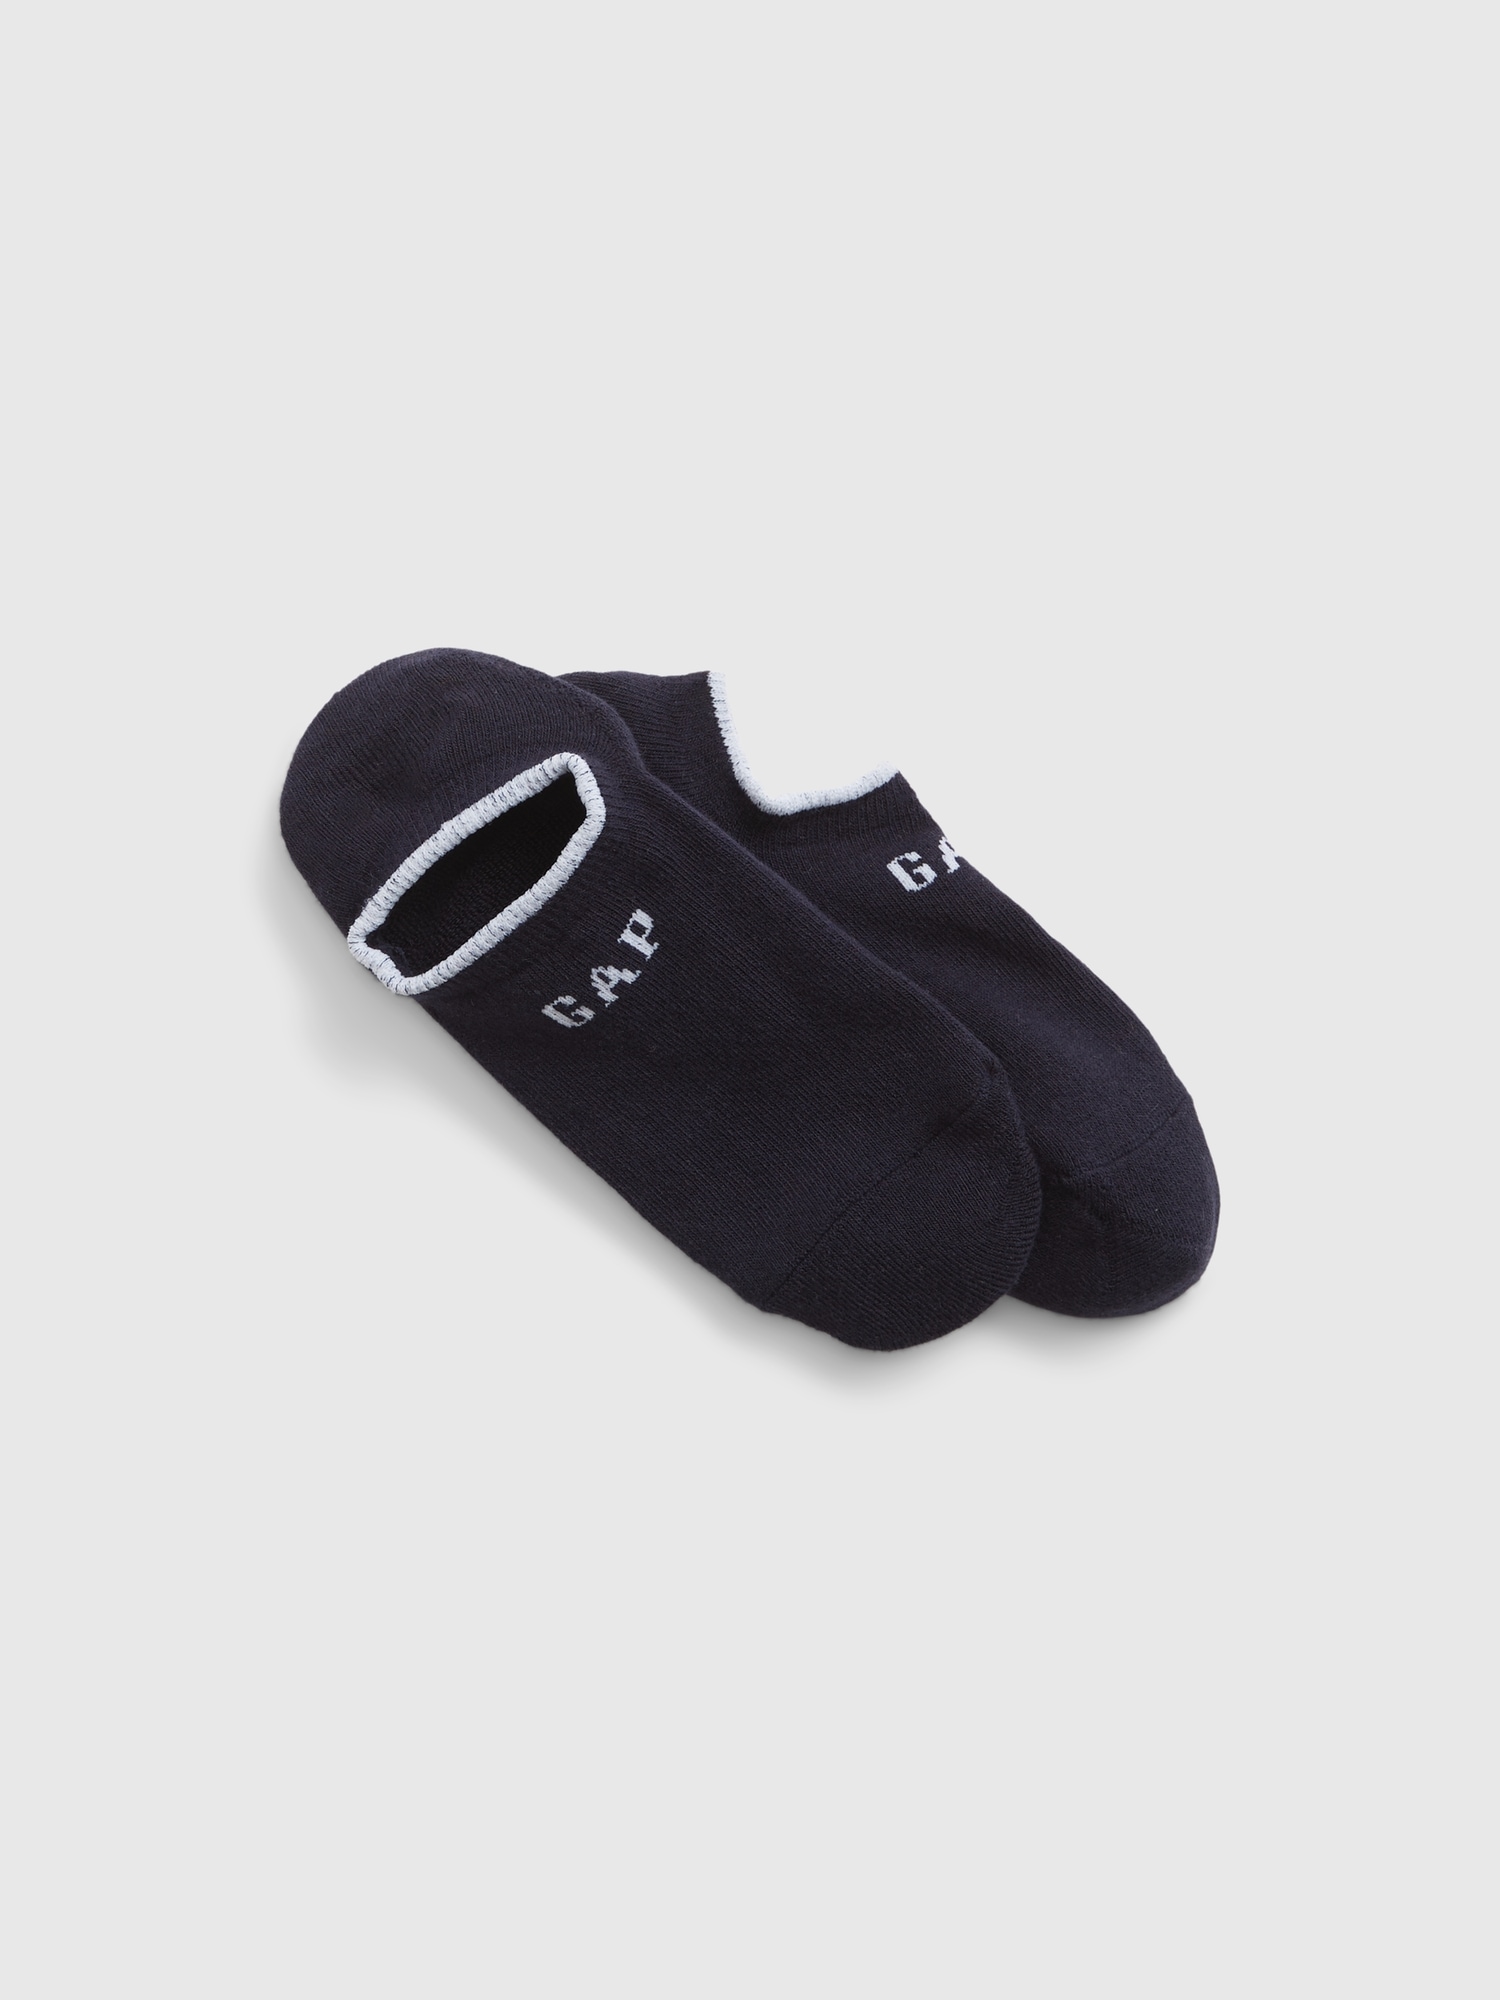 Unisex Athletic Ankle Socks